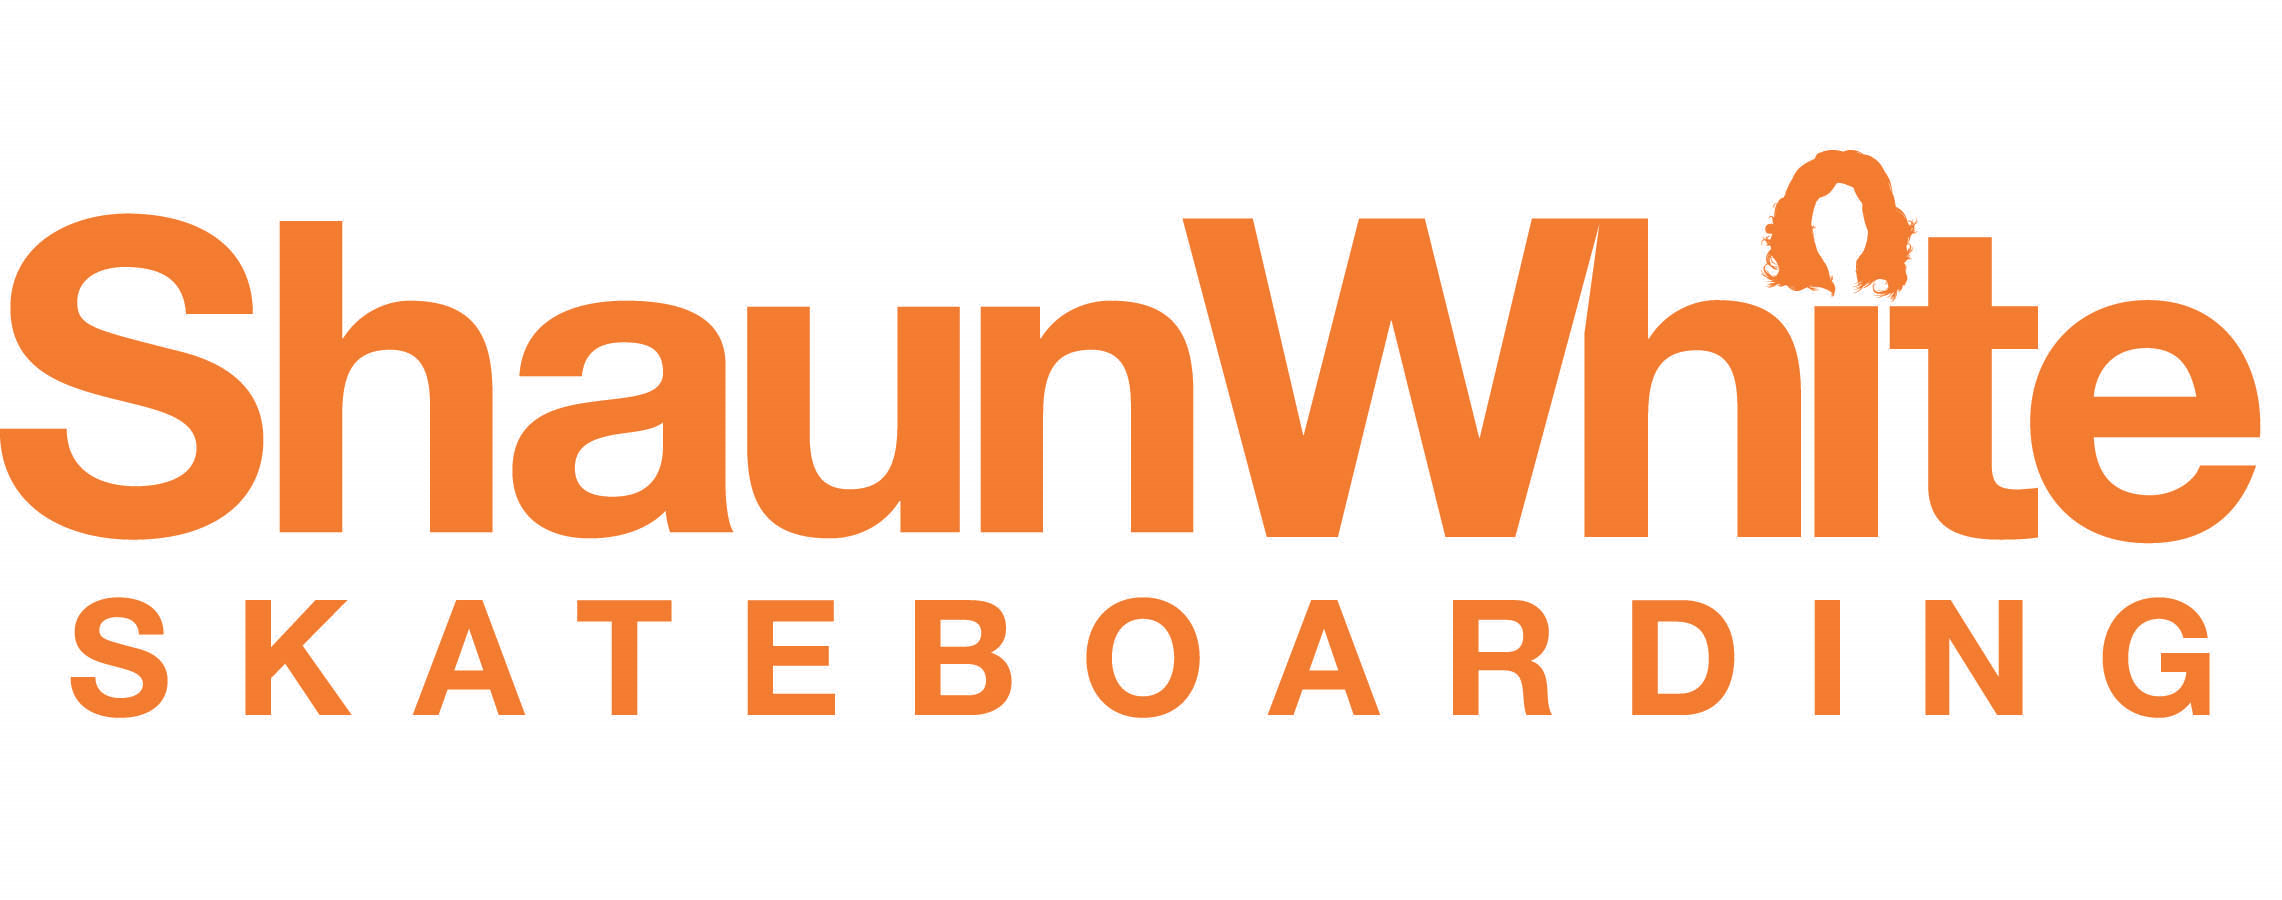 Shaun White Skateboarding, Logopedia